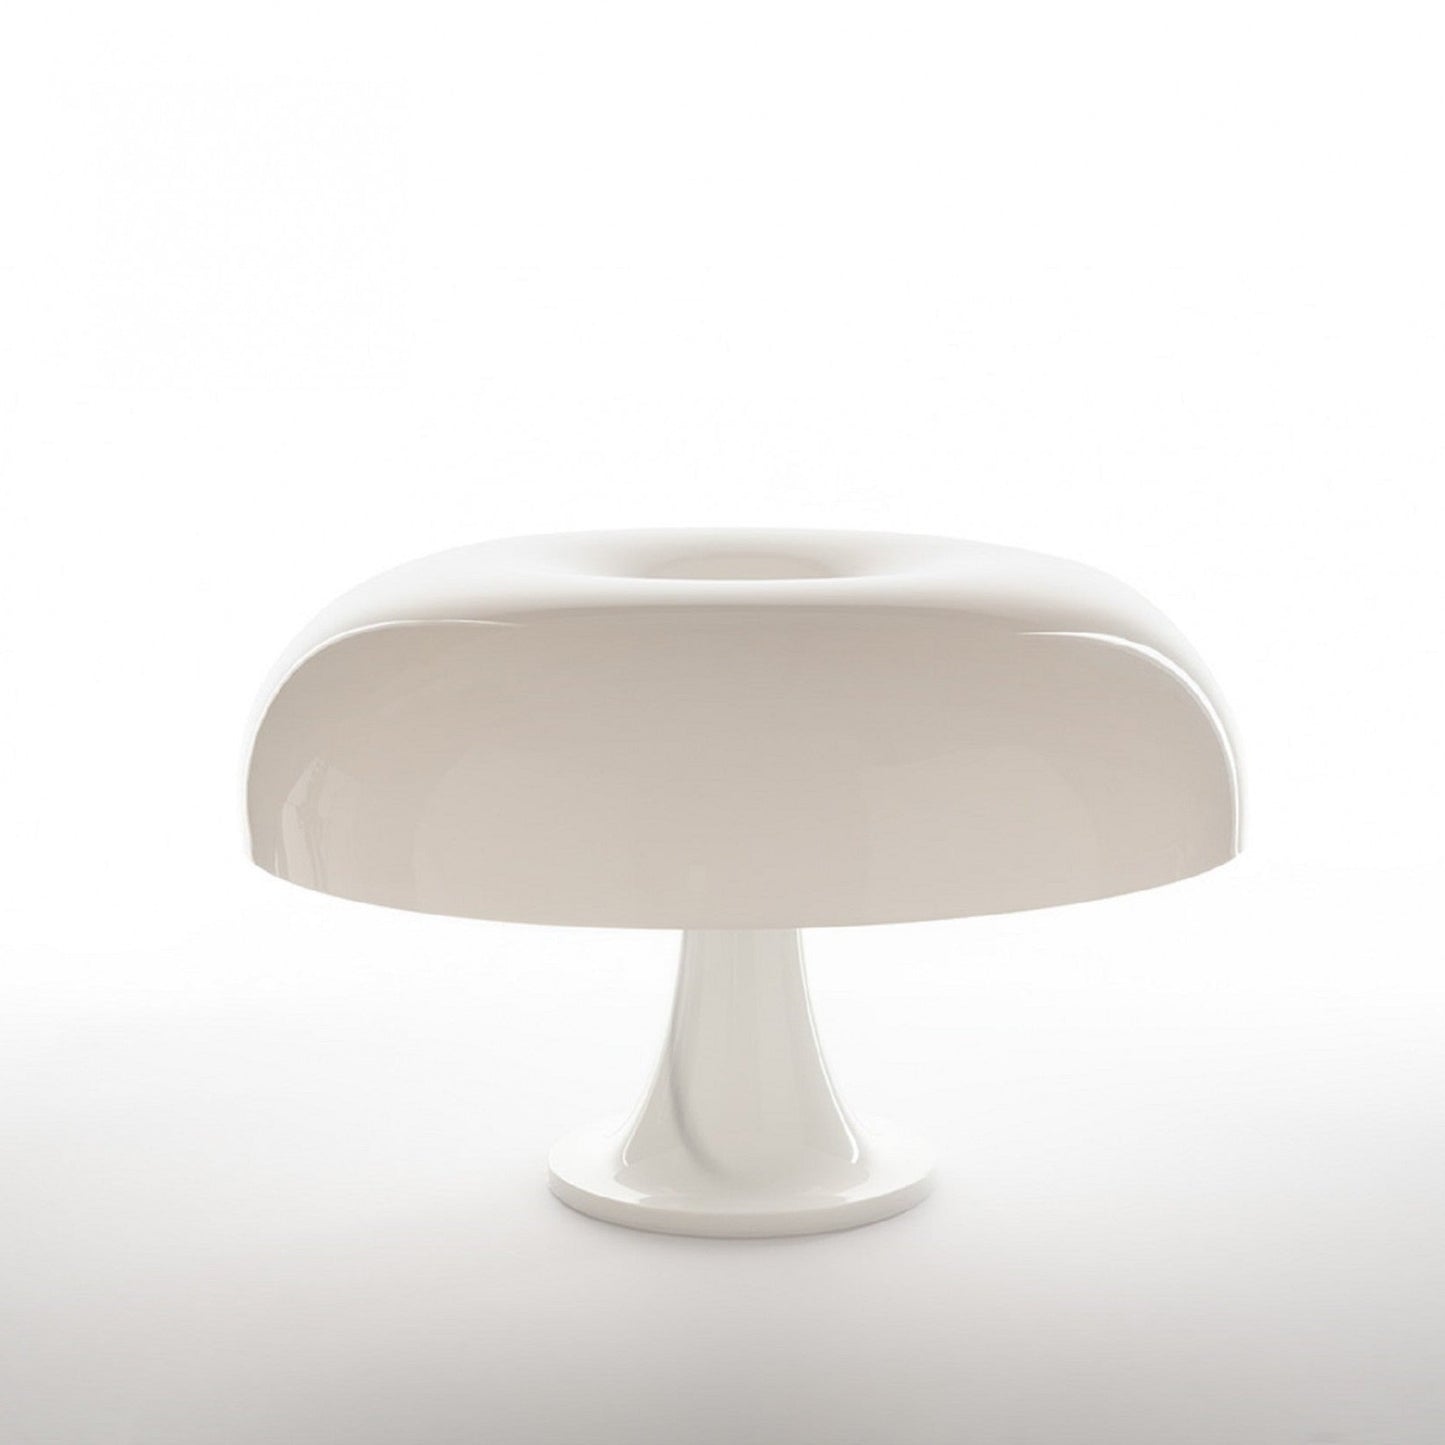 Nesso Table Lamp, White, E14, IP20